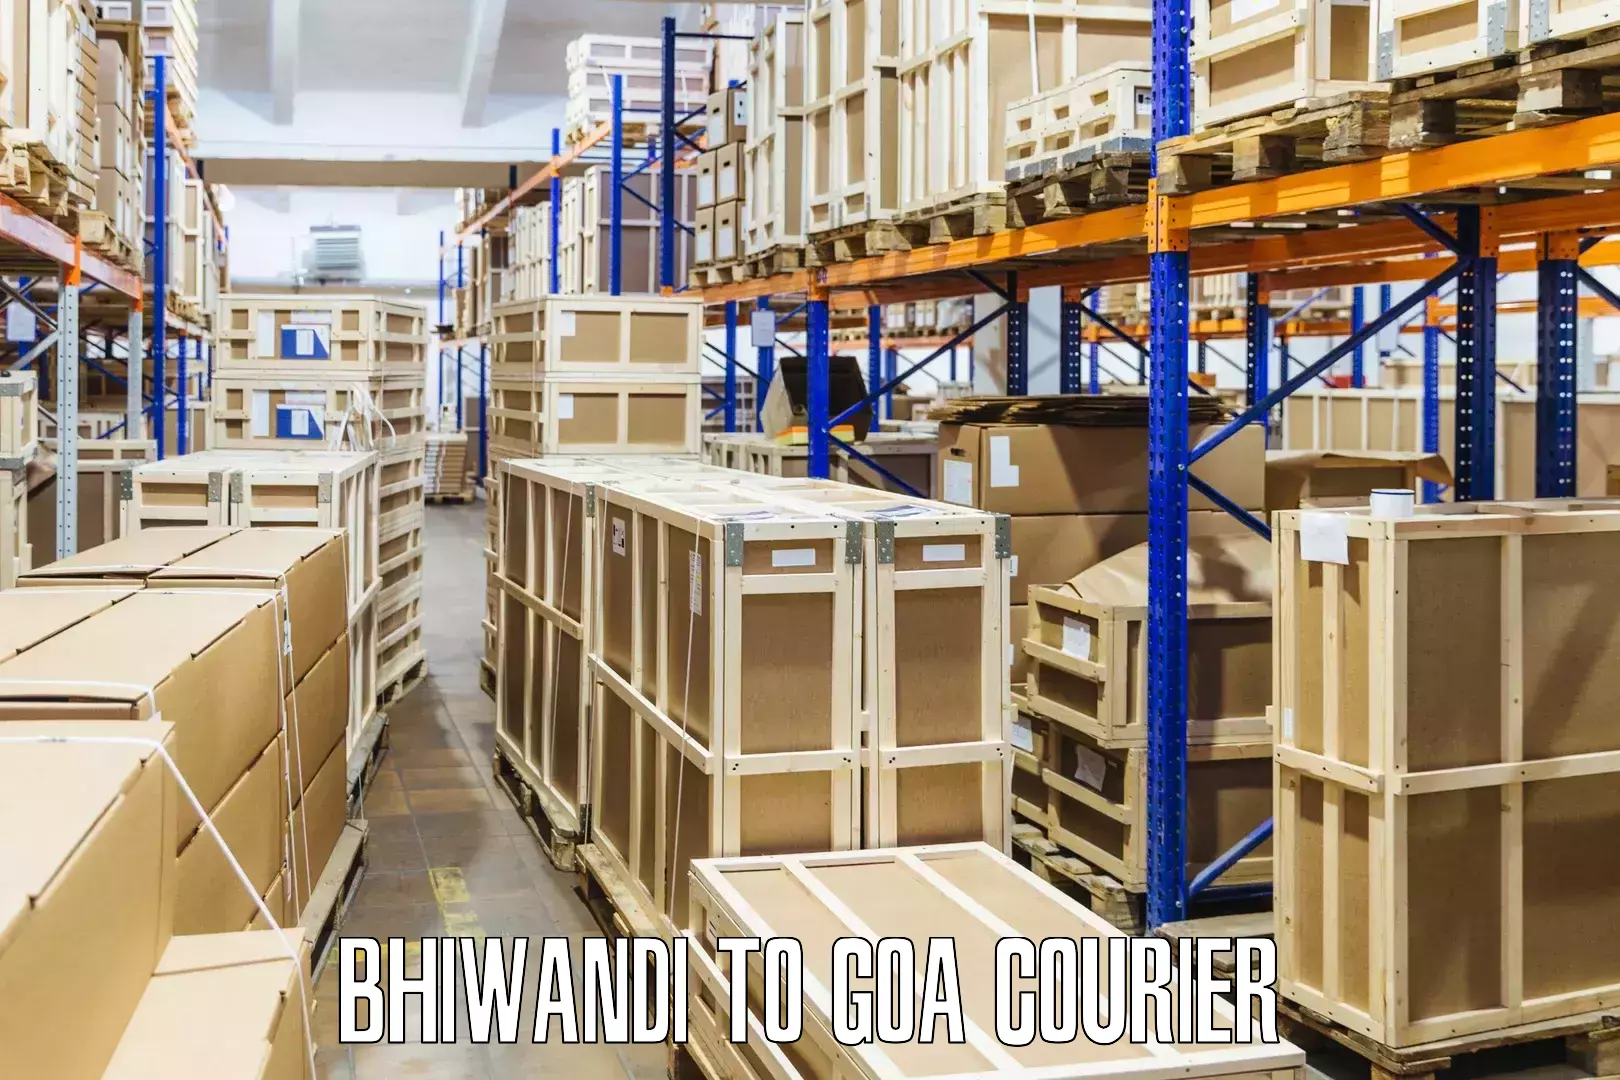 Global logistics network Bhiwandi to Goa